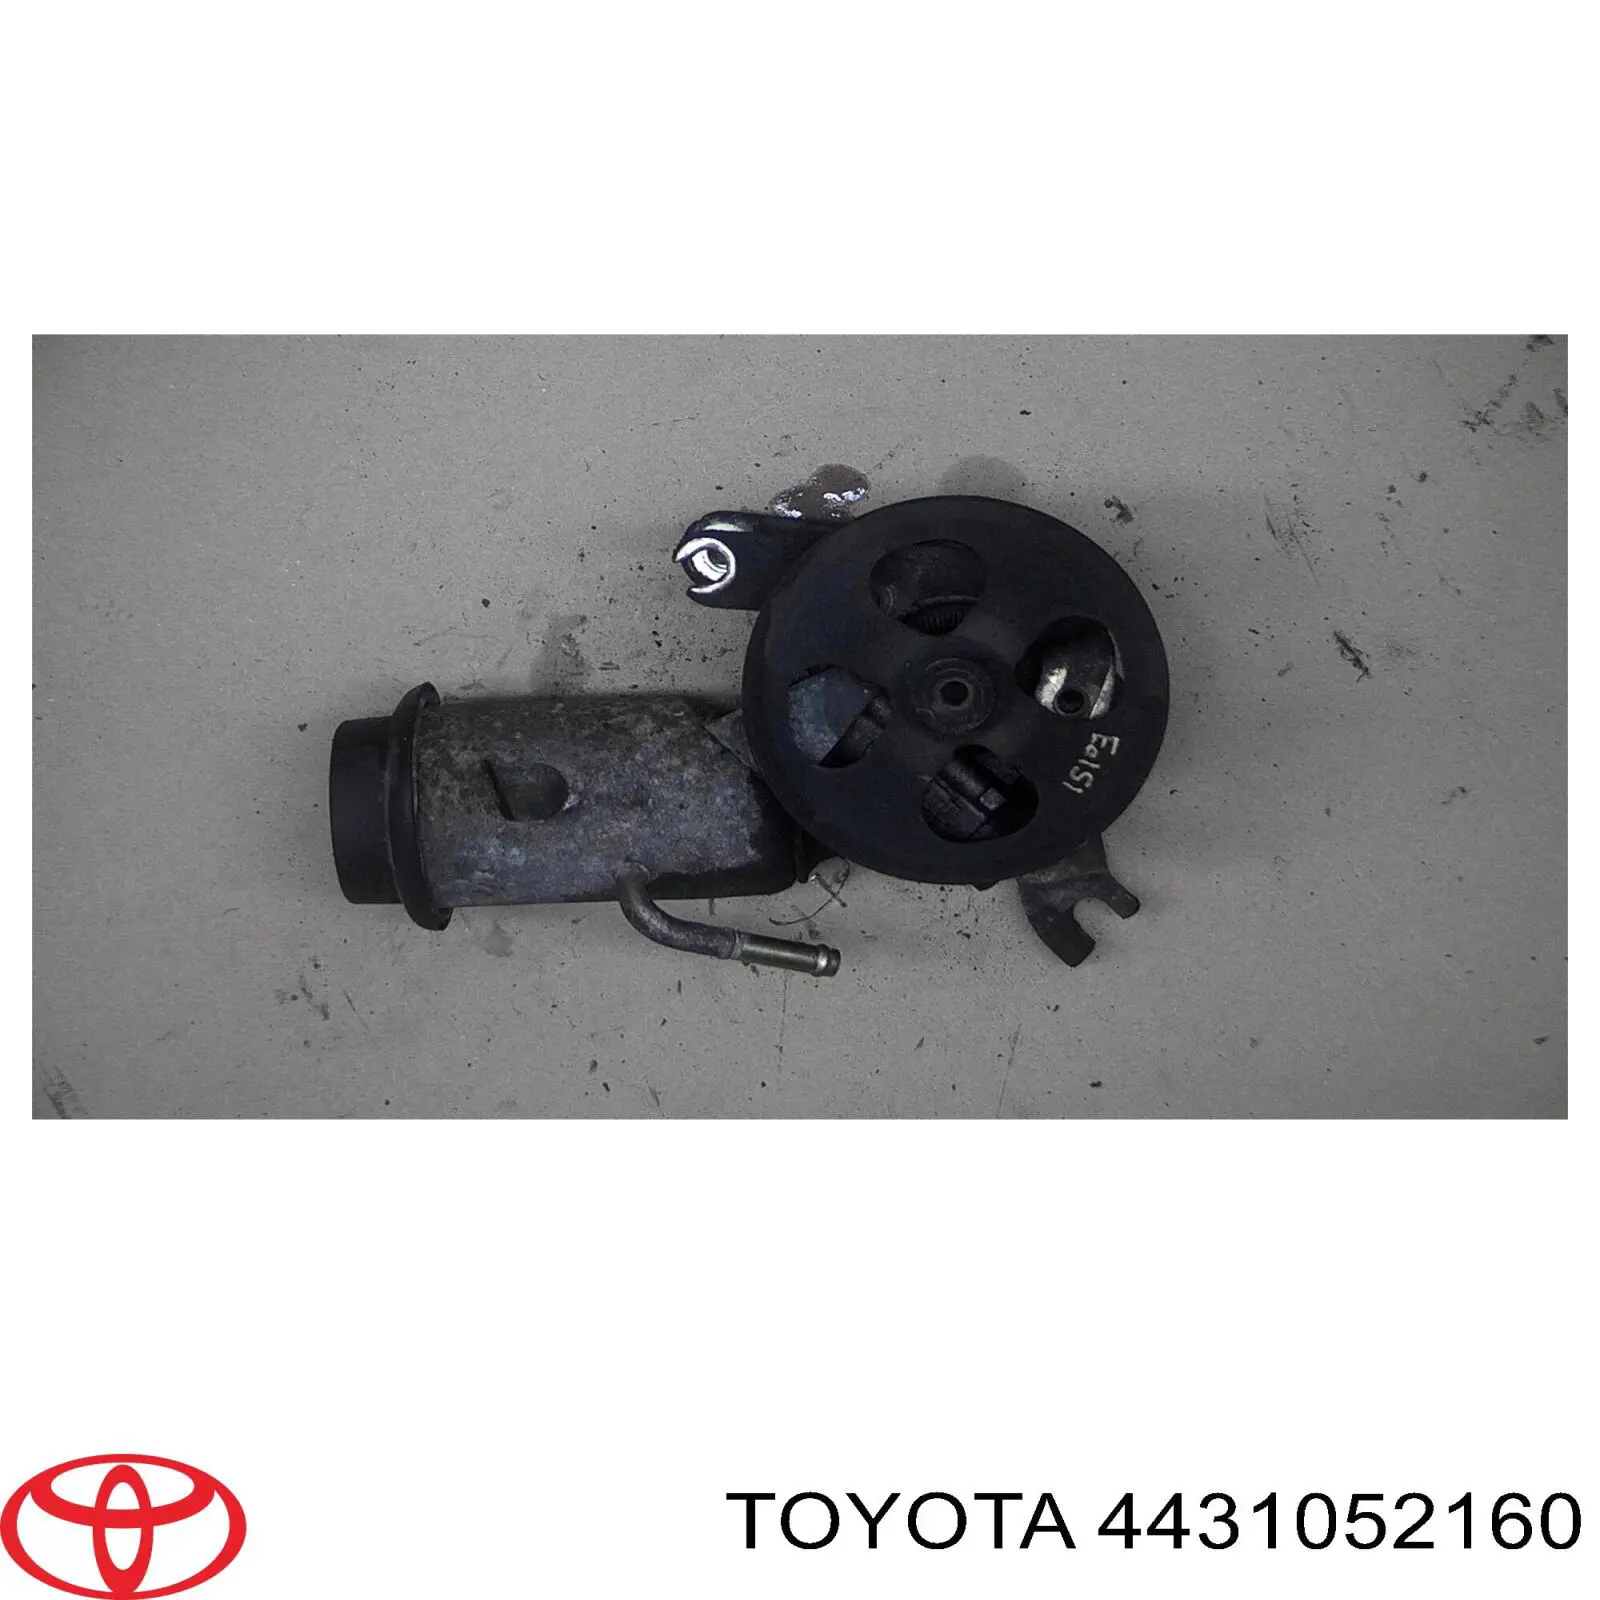 Bomba de dirección asistida Toyota Yaris VERSO 